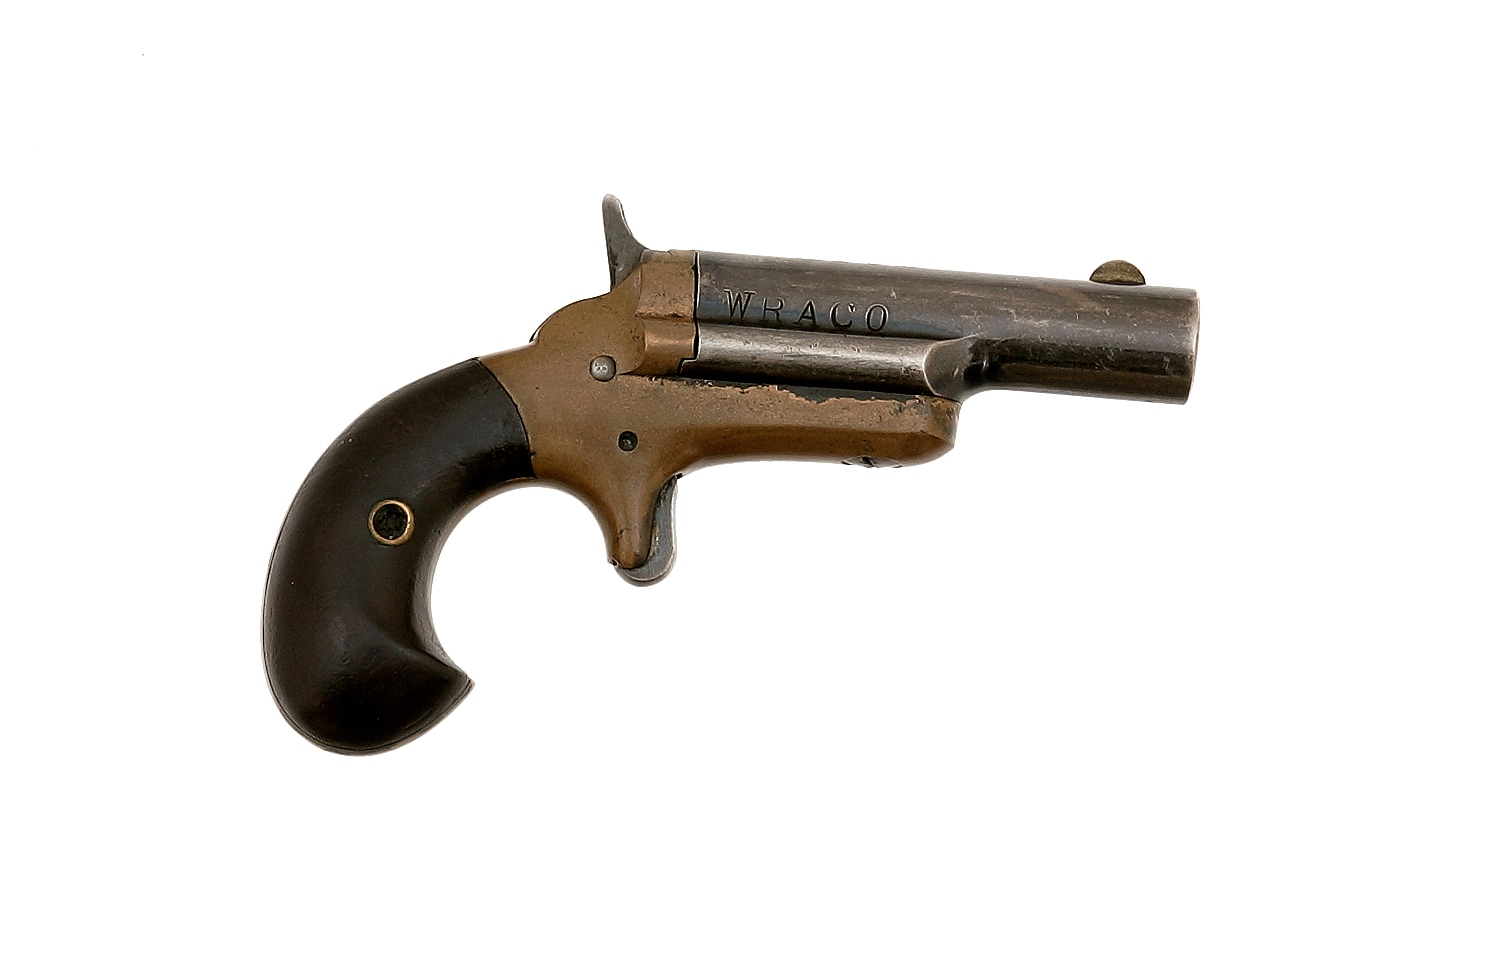 The Colt Derringer pistol.